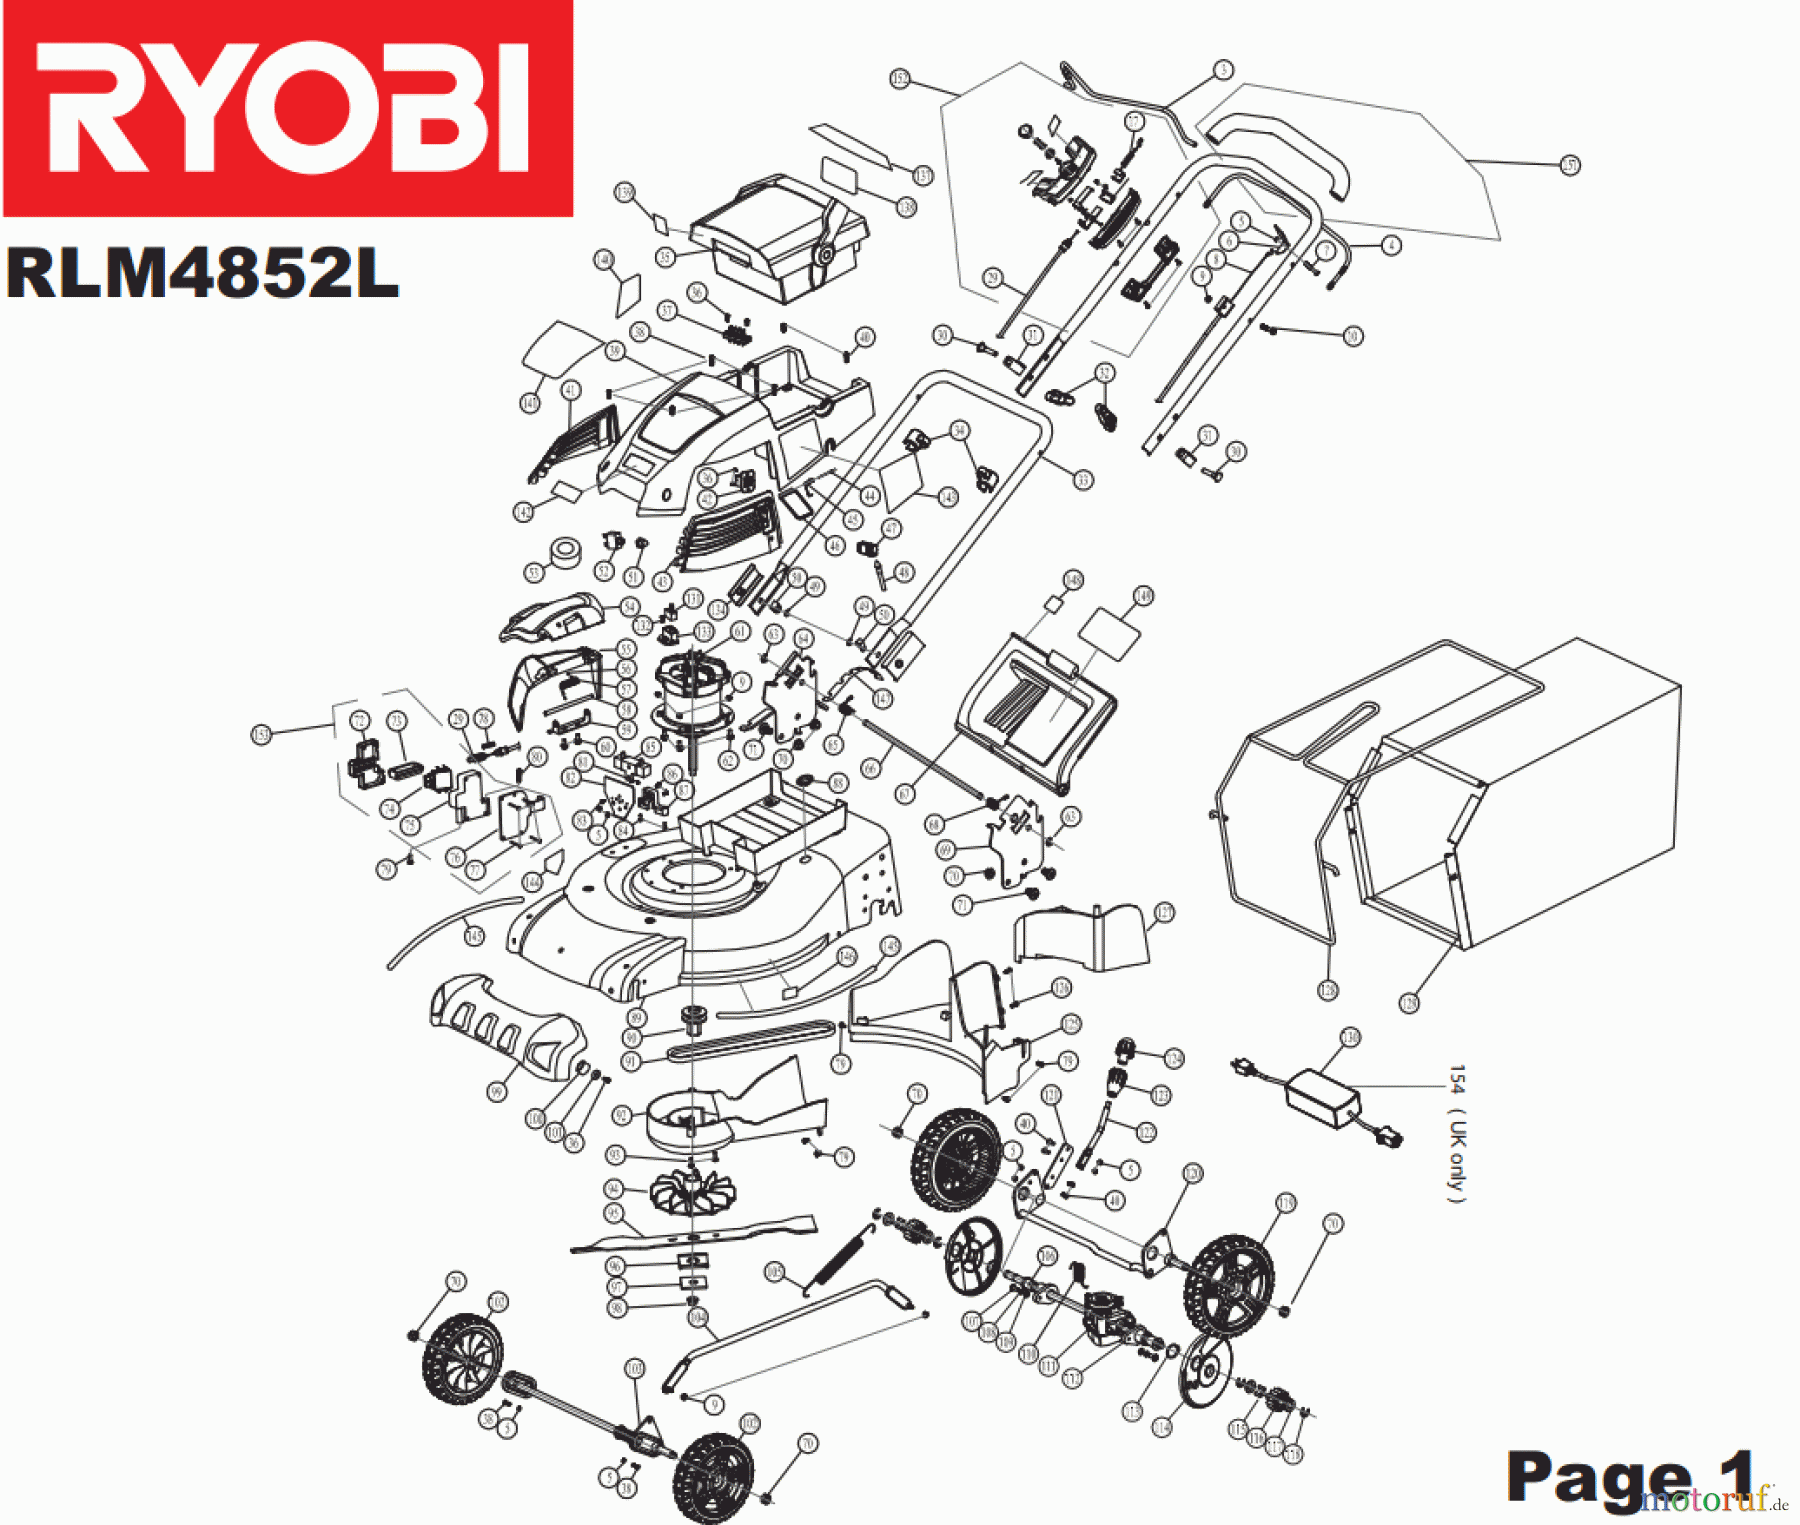  Ryobi Rasenmäher Akku RLM4852L Seite 1